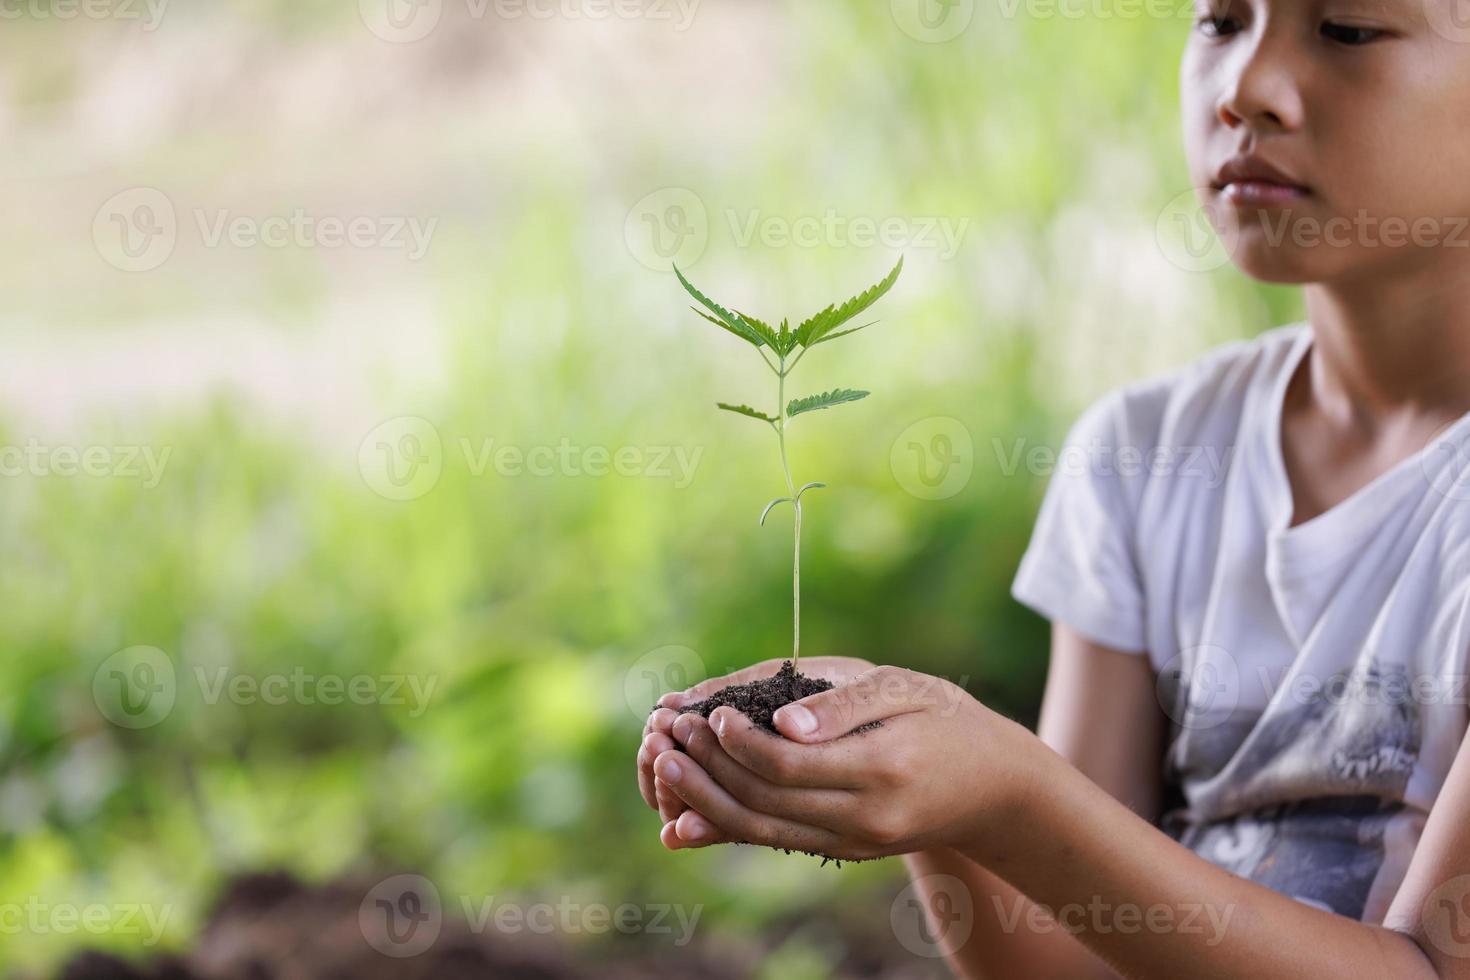 medio ambiente día de la tierra, niño sosteniendo un pequeño árbol en la mano en el concepto de conservación de bosques de hierba de campo natural, plantar árboles para reducir el calentamiento global. foto